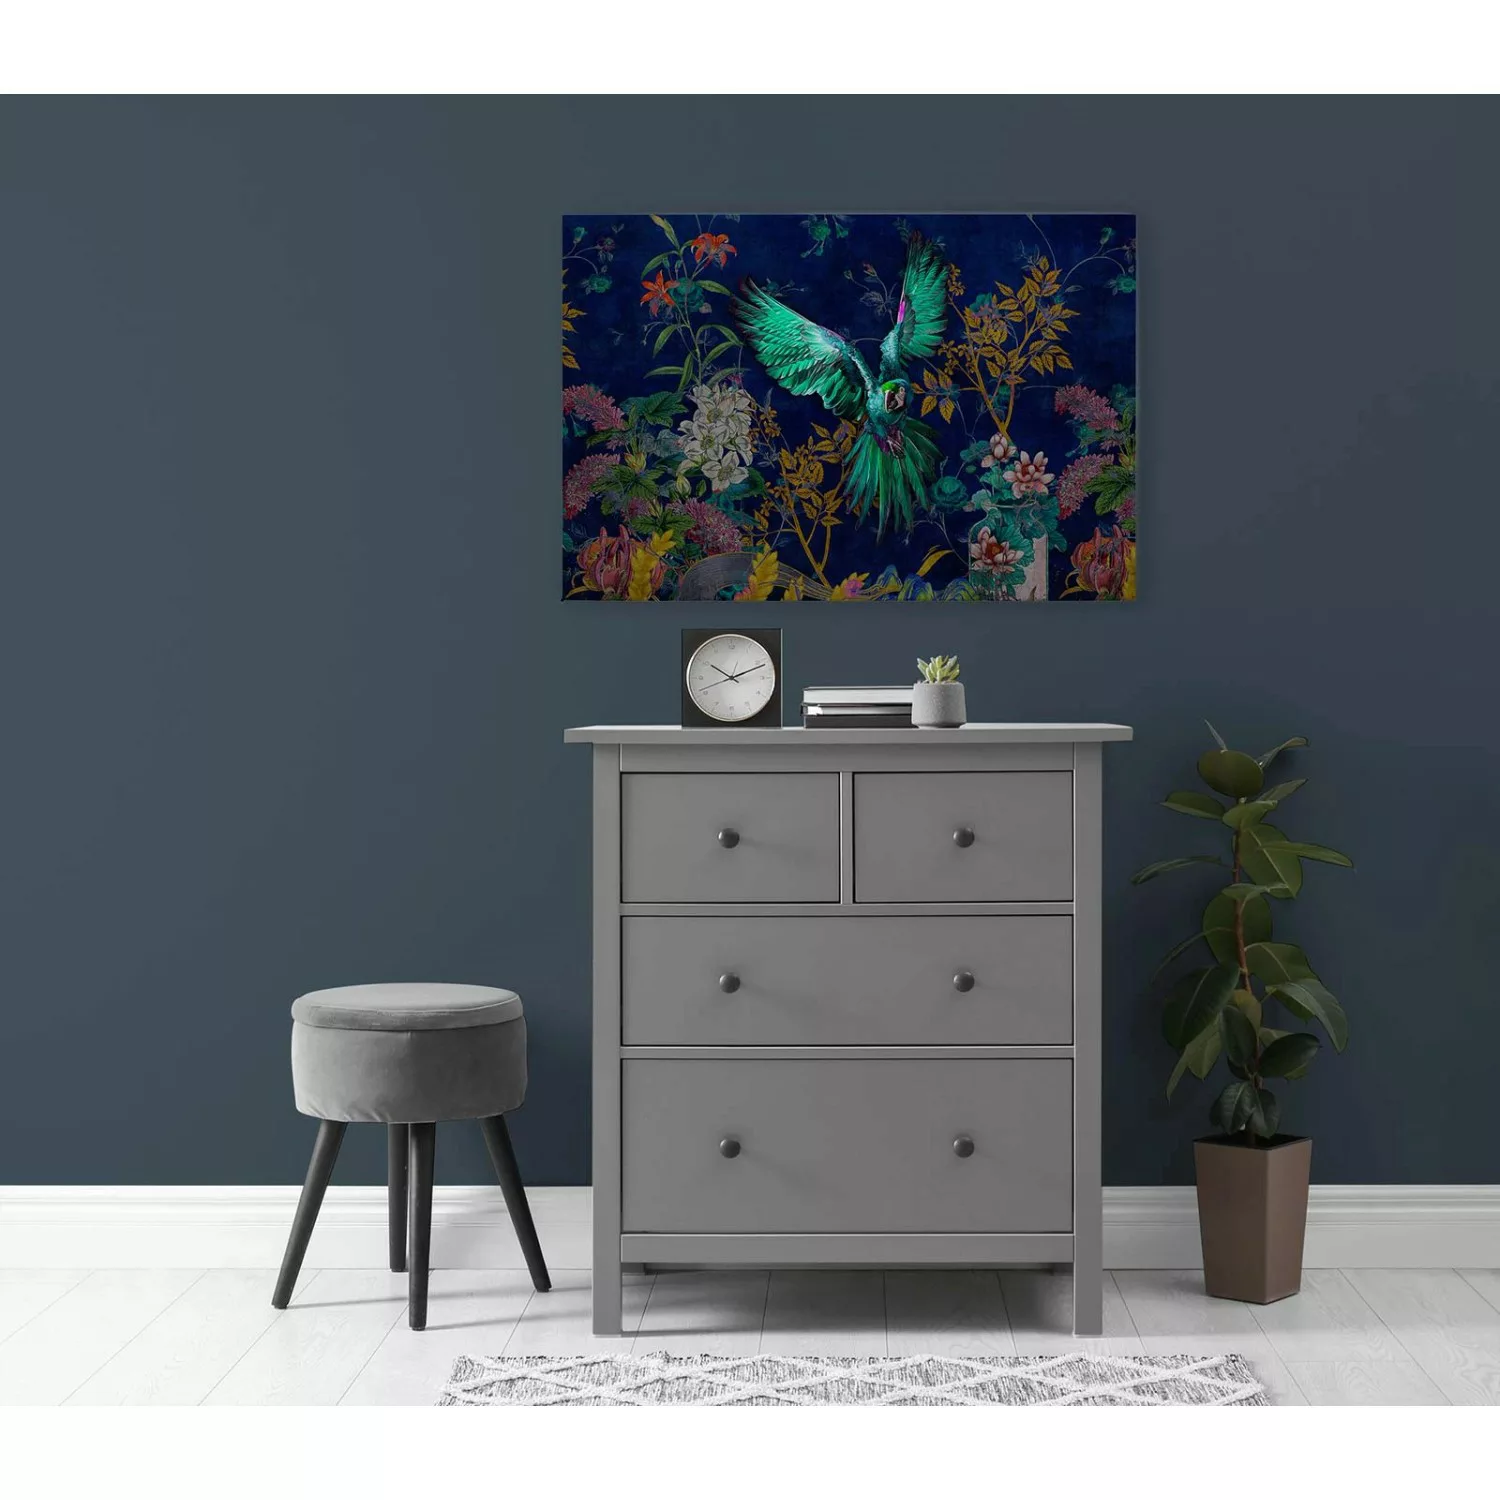 Bricoflor Dschungel Bild 120 X 80 Cm Leinwandbild Papagei In Blau Modernes günstig online kaufen